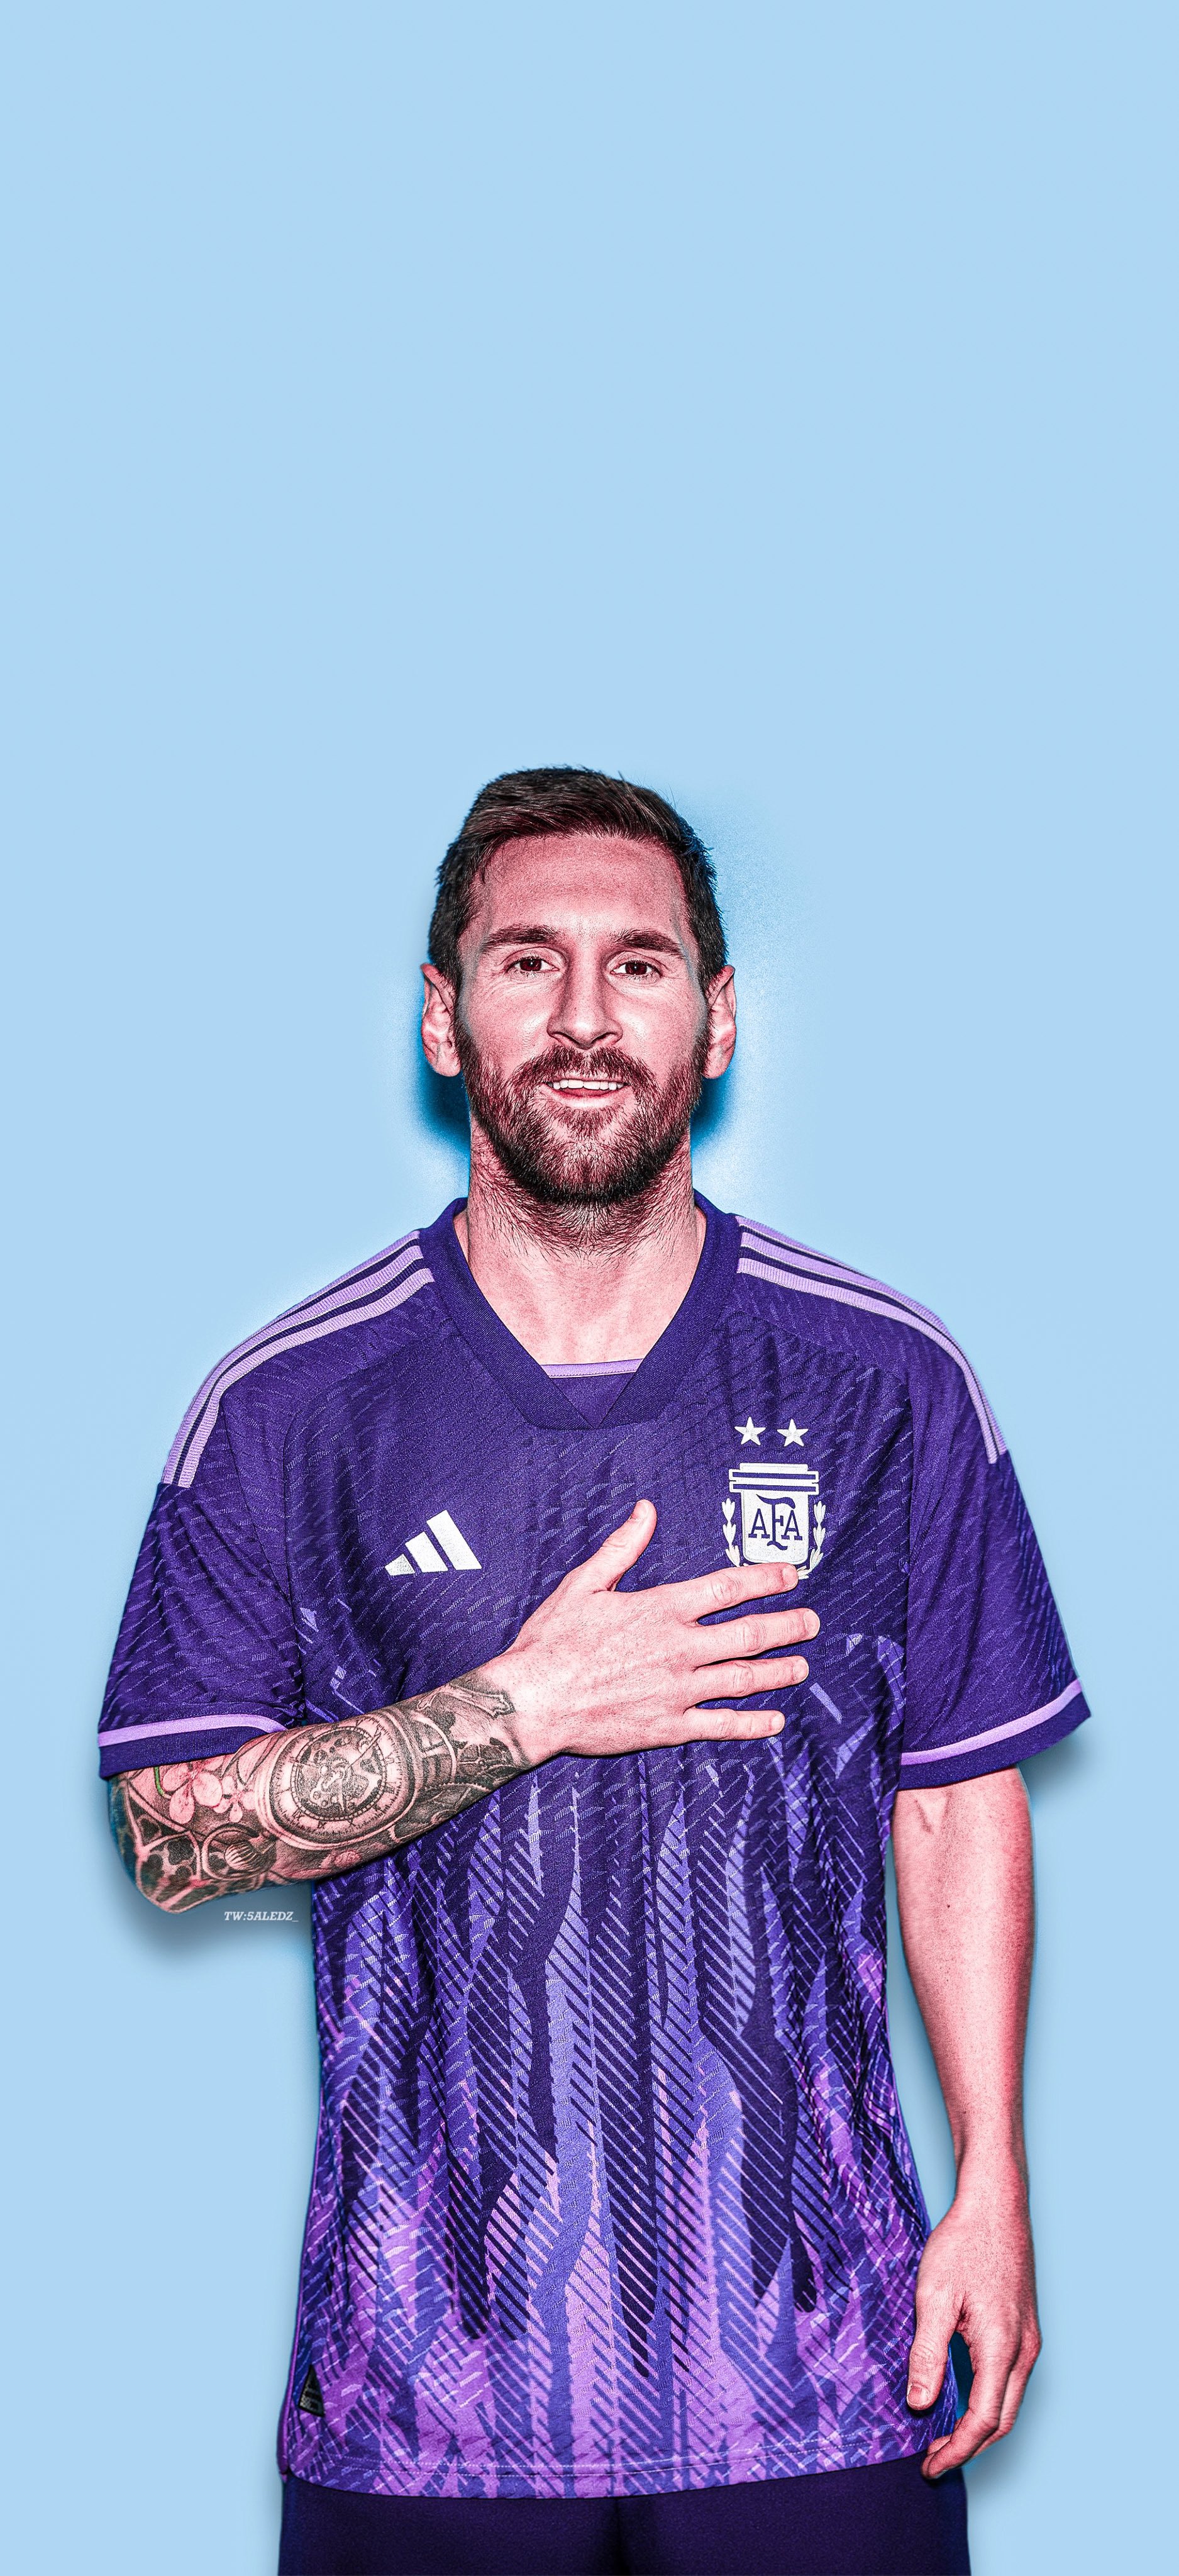 Đừng bỏ lỡ cơ hội xem Messi diện bộ đồ mới của đội tuyển Argentina ngay hôm nay! Sự chuyển động và hiệu ứng trên bức hình sẽ mang đến cho bạn cảm giác như đang ở trên sân bóng và ngắm nhìn Messi trong đội hình.